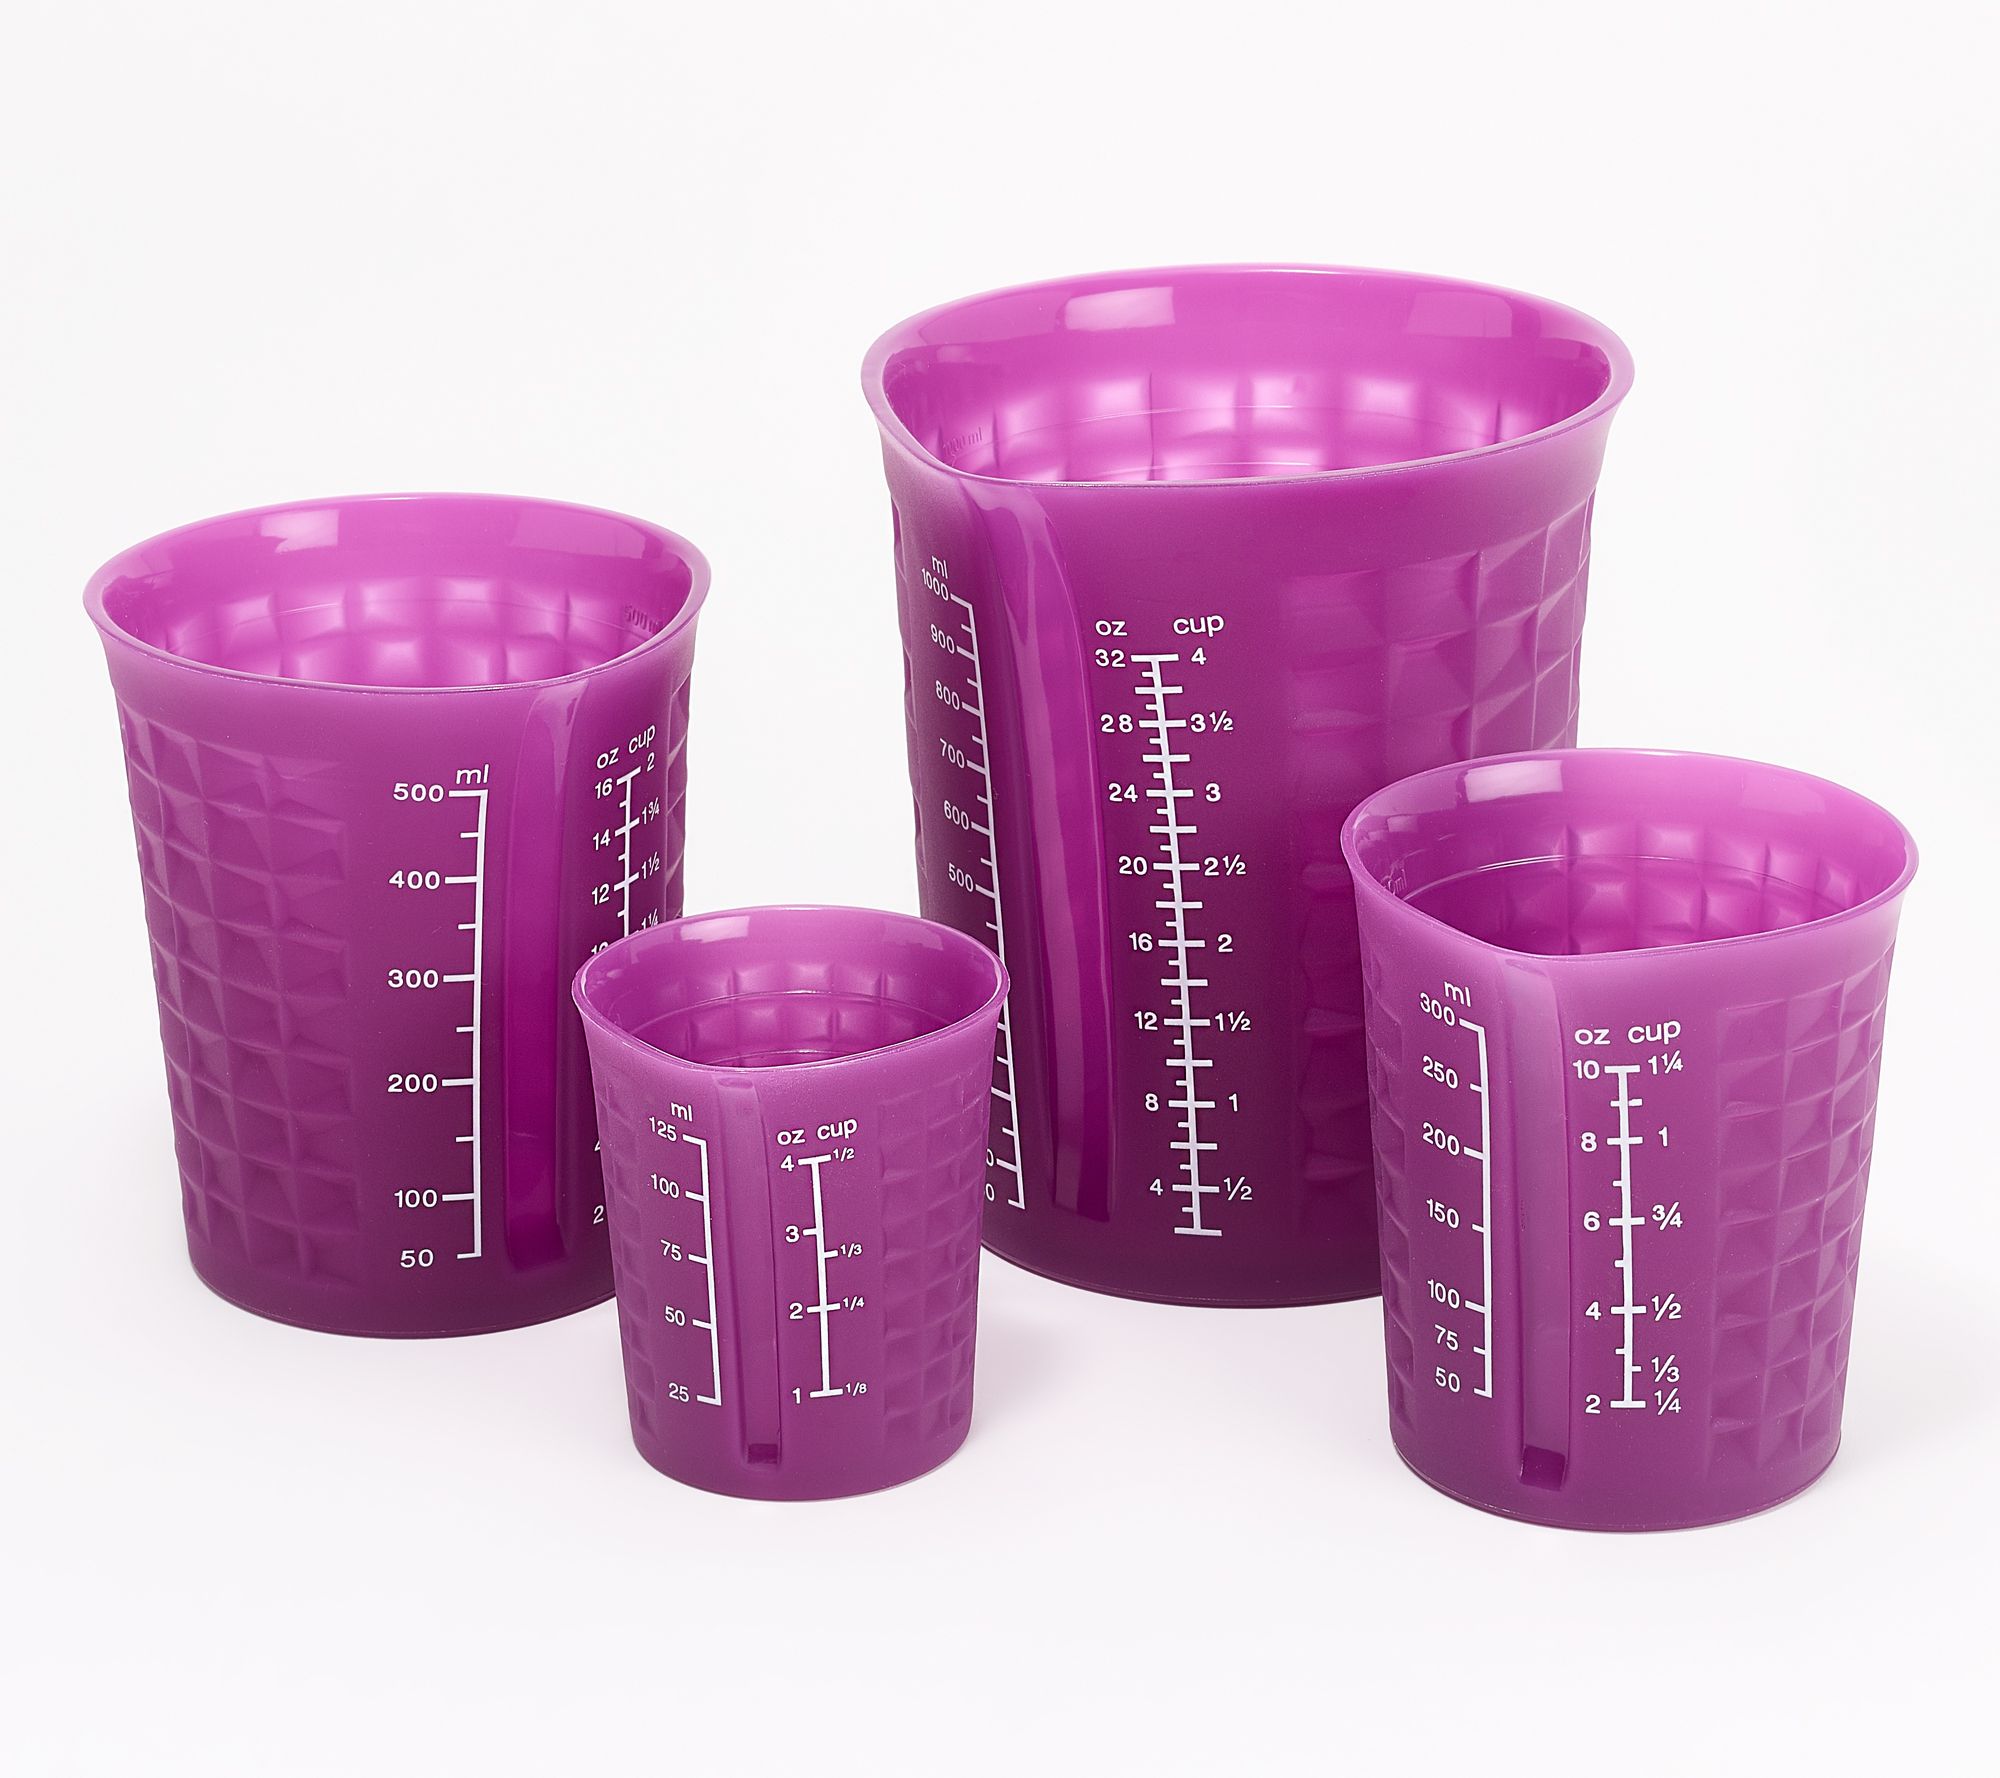 Kitchenaid Set of 4 Dishwasher Safe Measuring Cups, Assorted Color